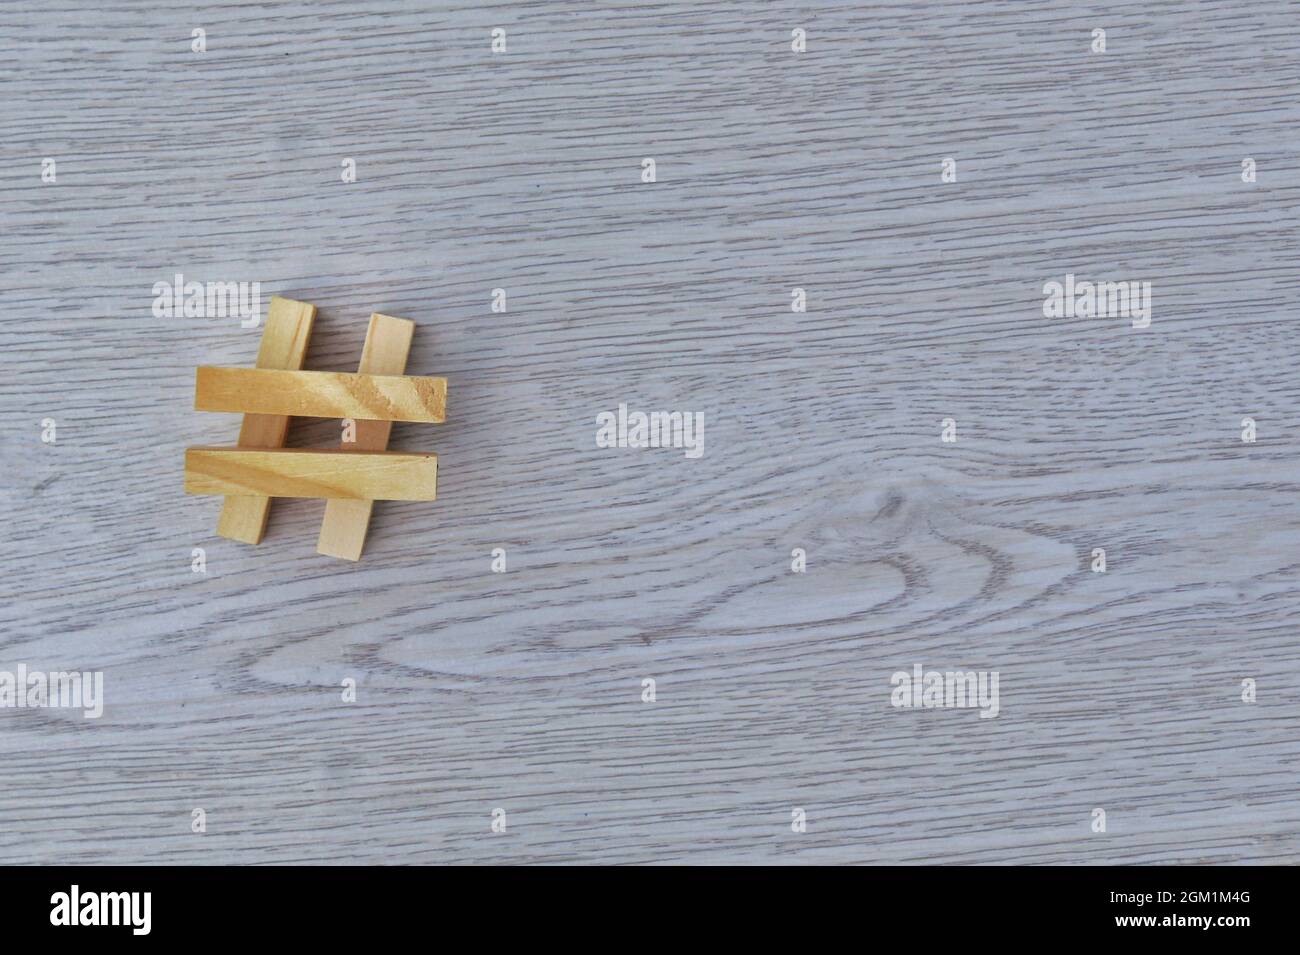 Symbole hashtag signe fait avec une pile de carreaux de bois. Copier l'espace pour le texte Banque D'Images